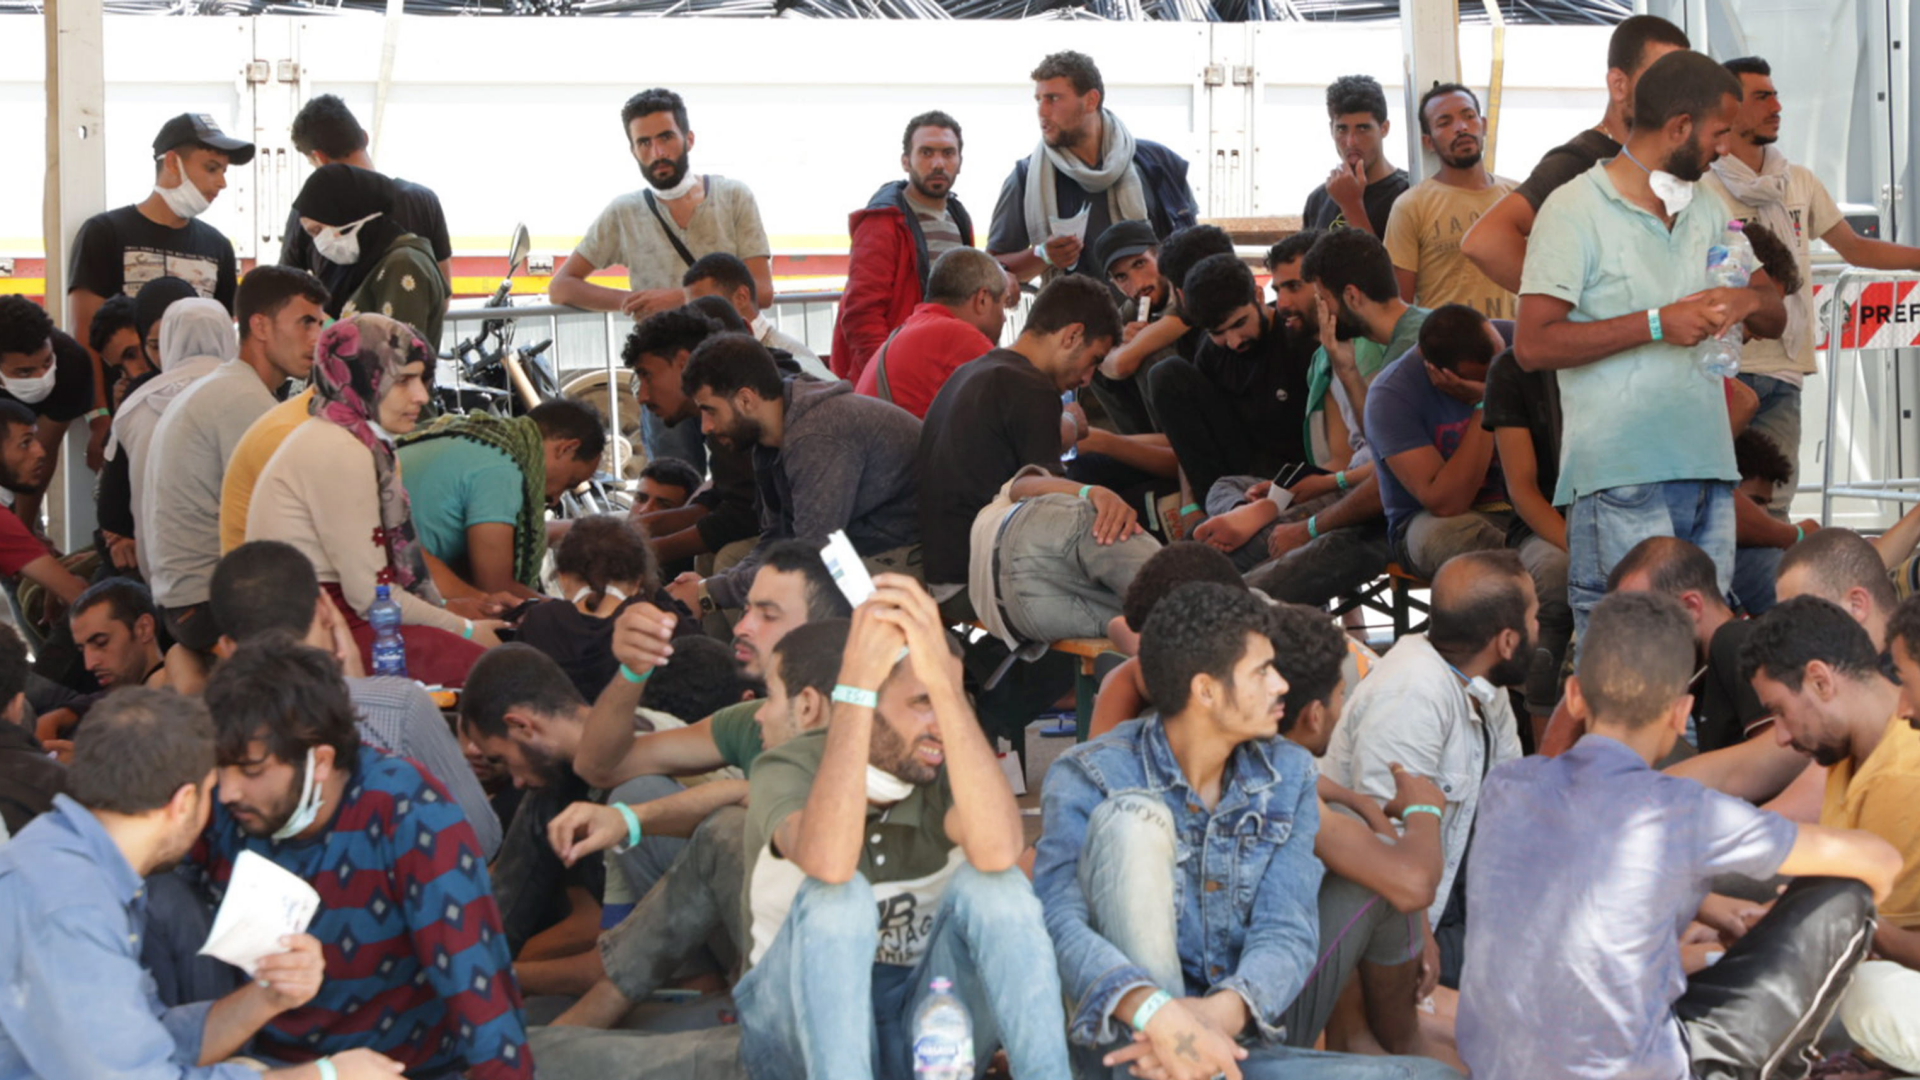 Migranten kommen in Italien an: mehr als 1.000 Flüchtlinge in wenigen Stunden